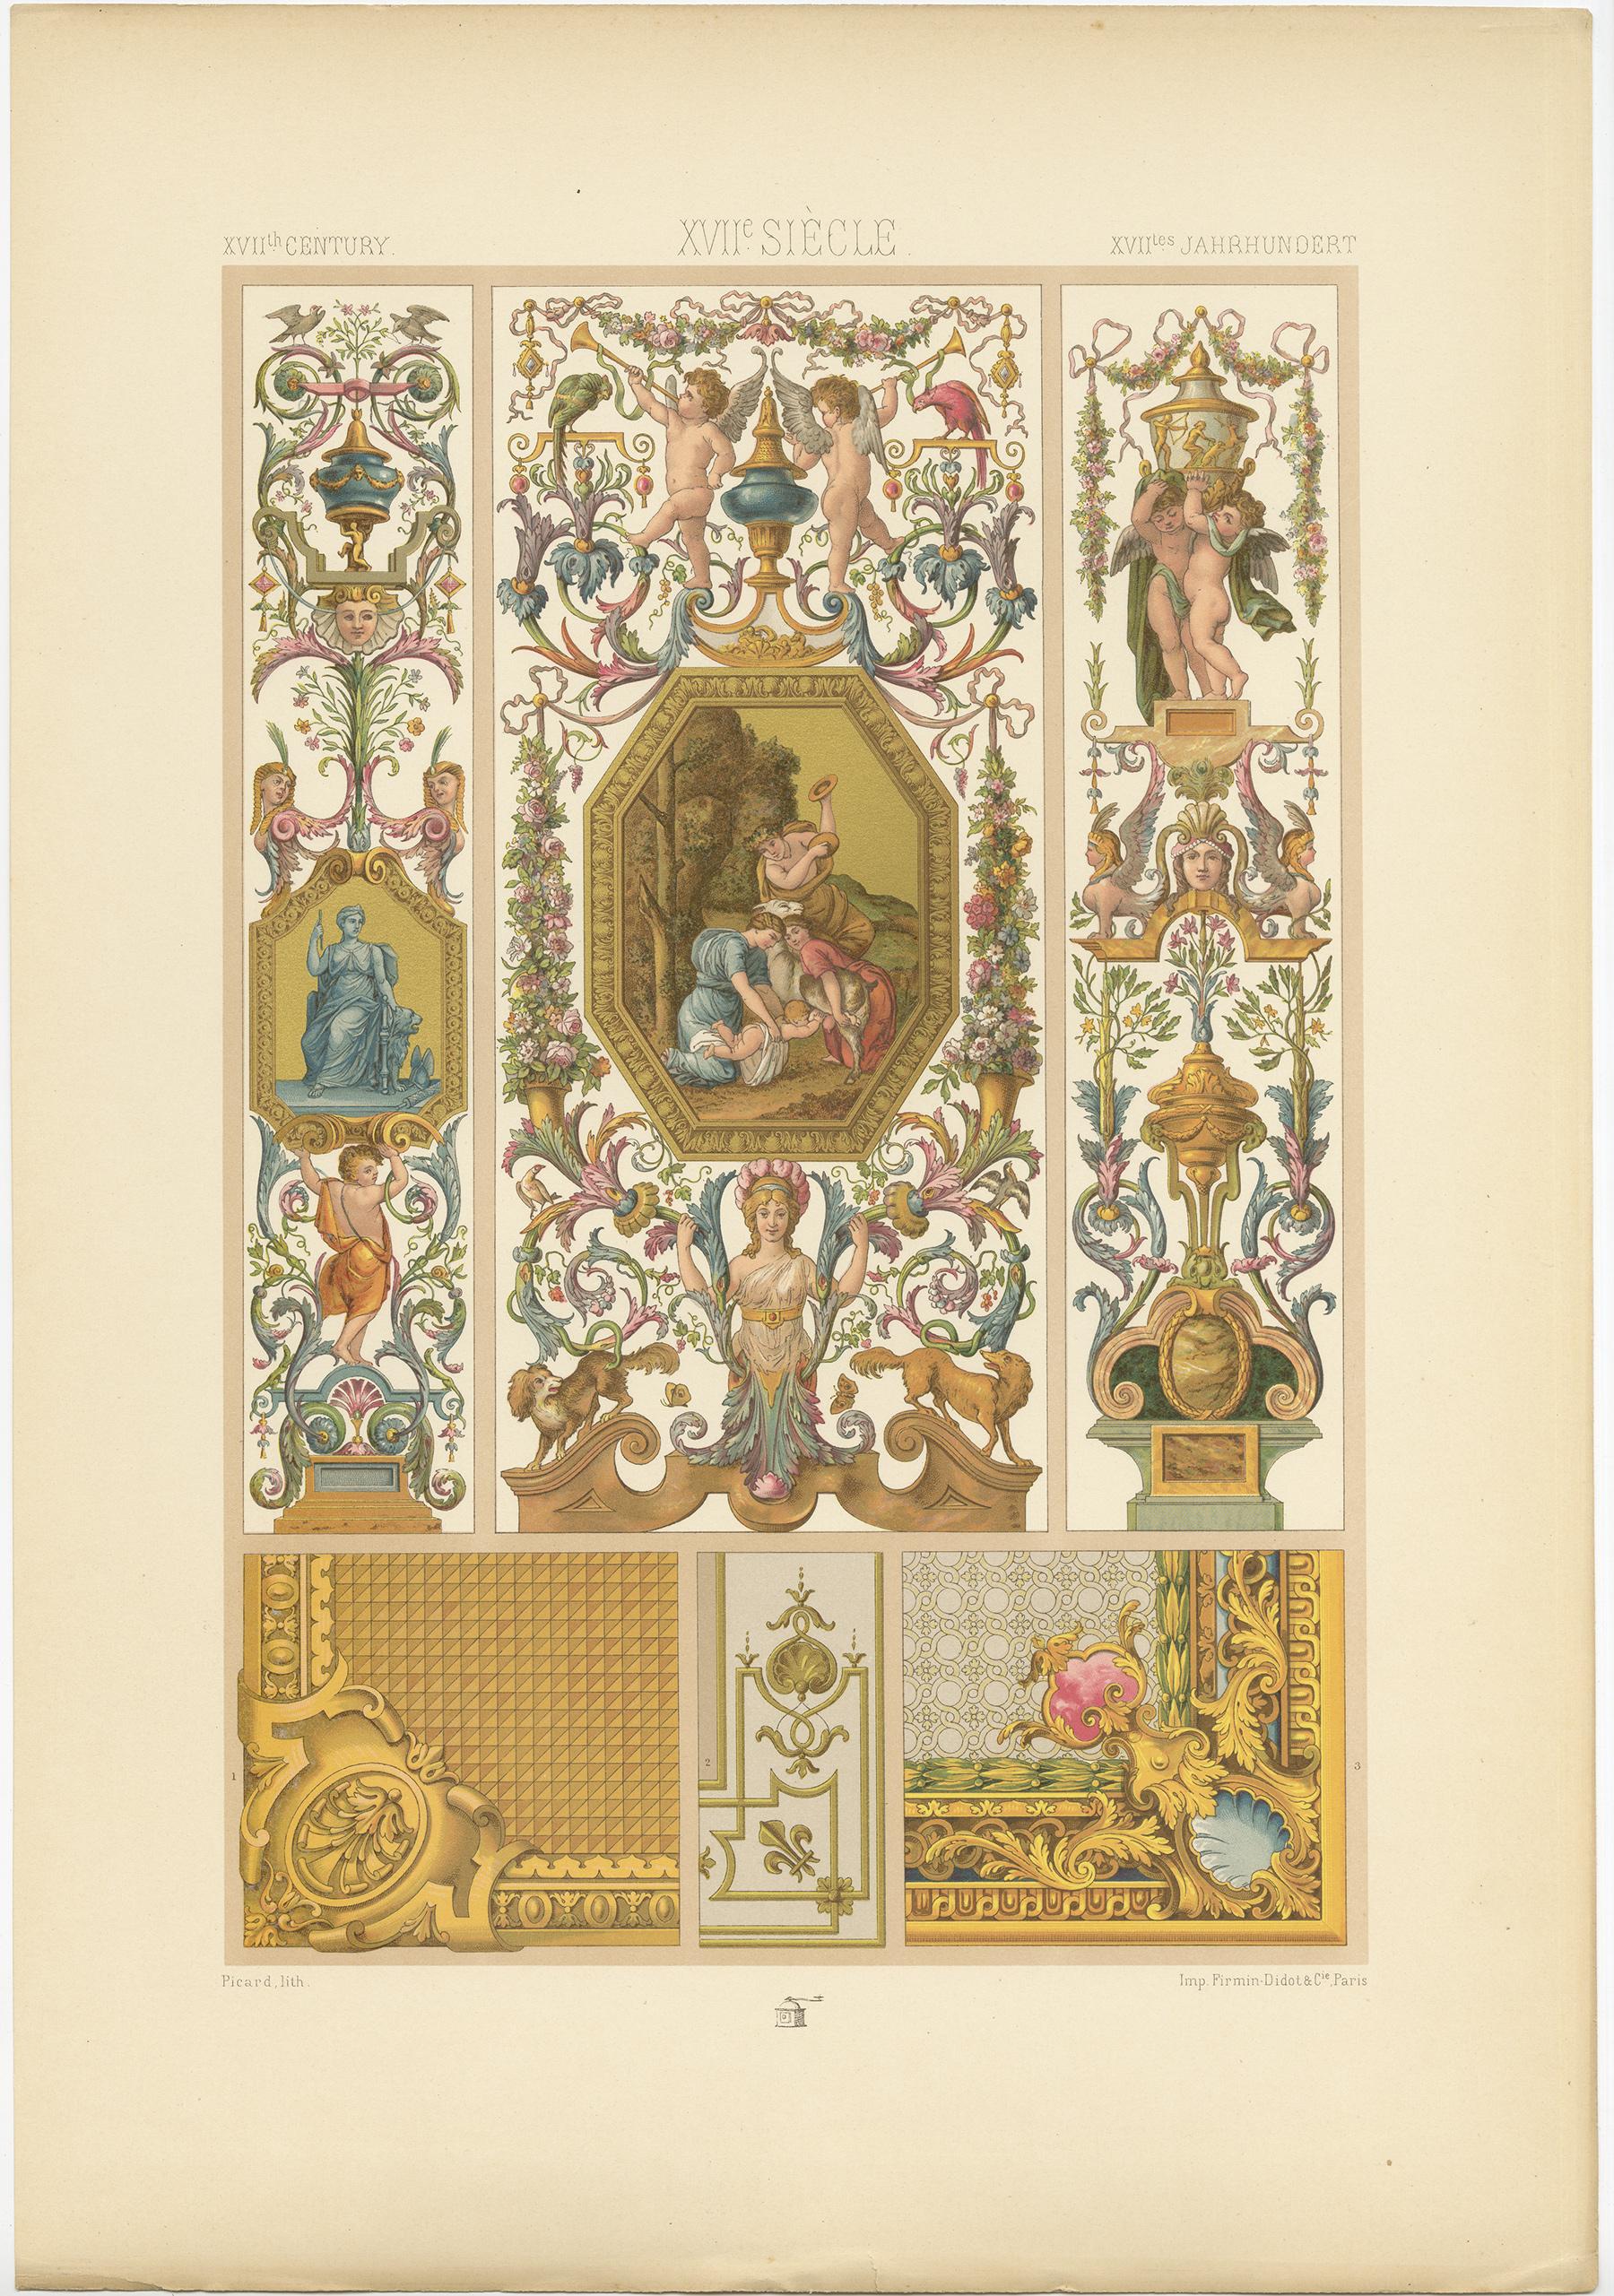 Antiker Druck mit dem Titel '17. Jahrhundert - XVIIc Siècle - XVIILes Jahrhundert'. Chromolithografie der Innenausstattung (Gemälde, Wandteppiche, Holzarbeiten), französische Ornamente. Dieser Druck stammt aus 